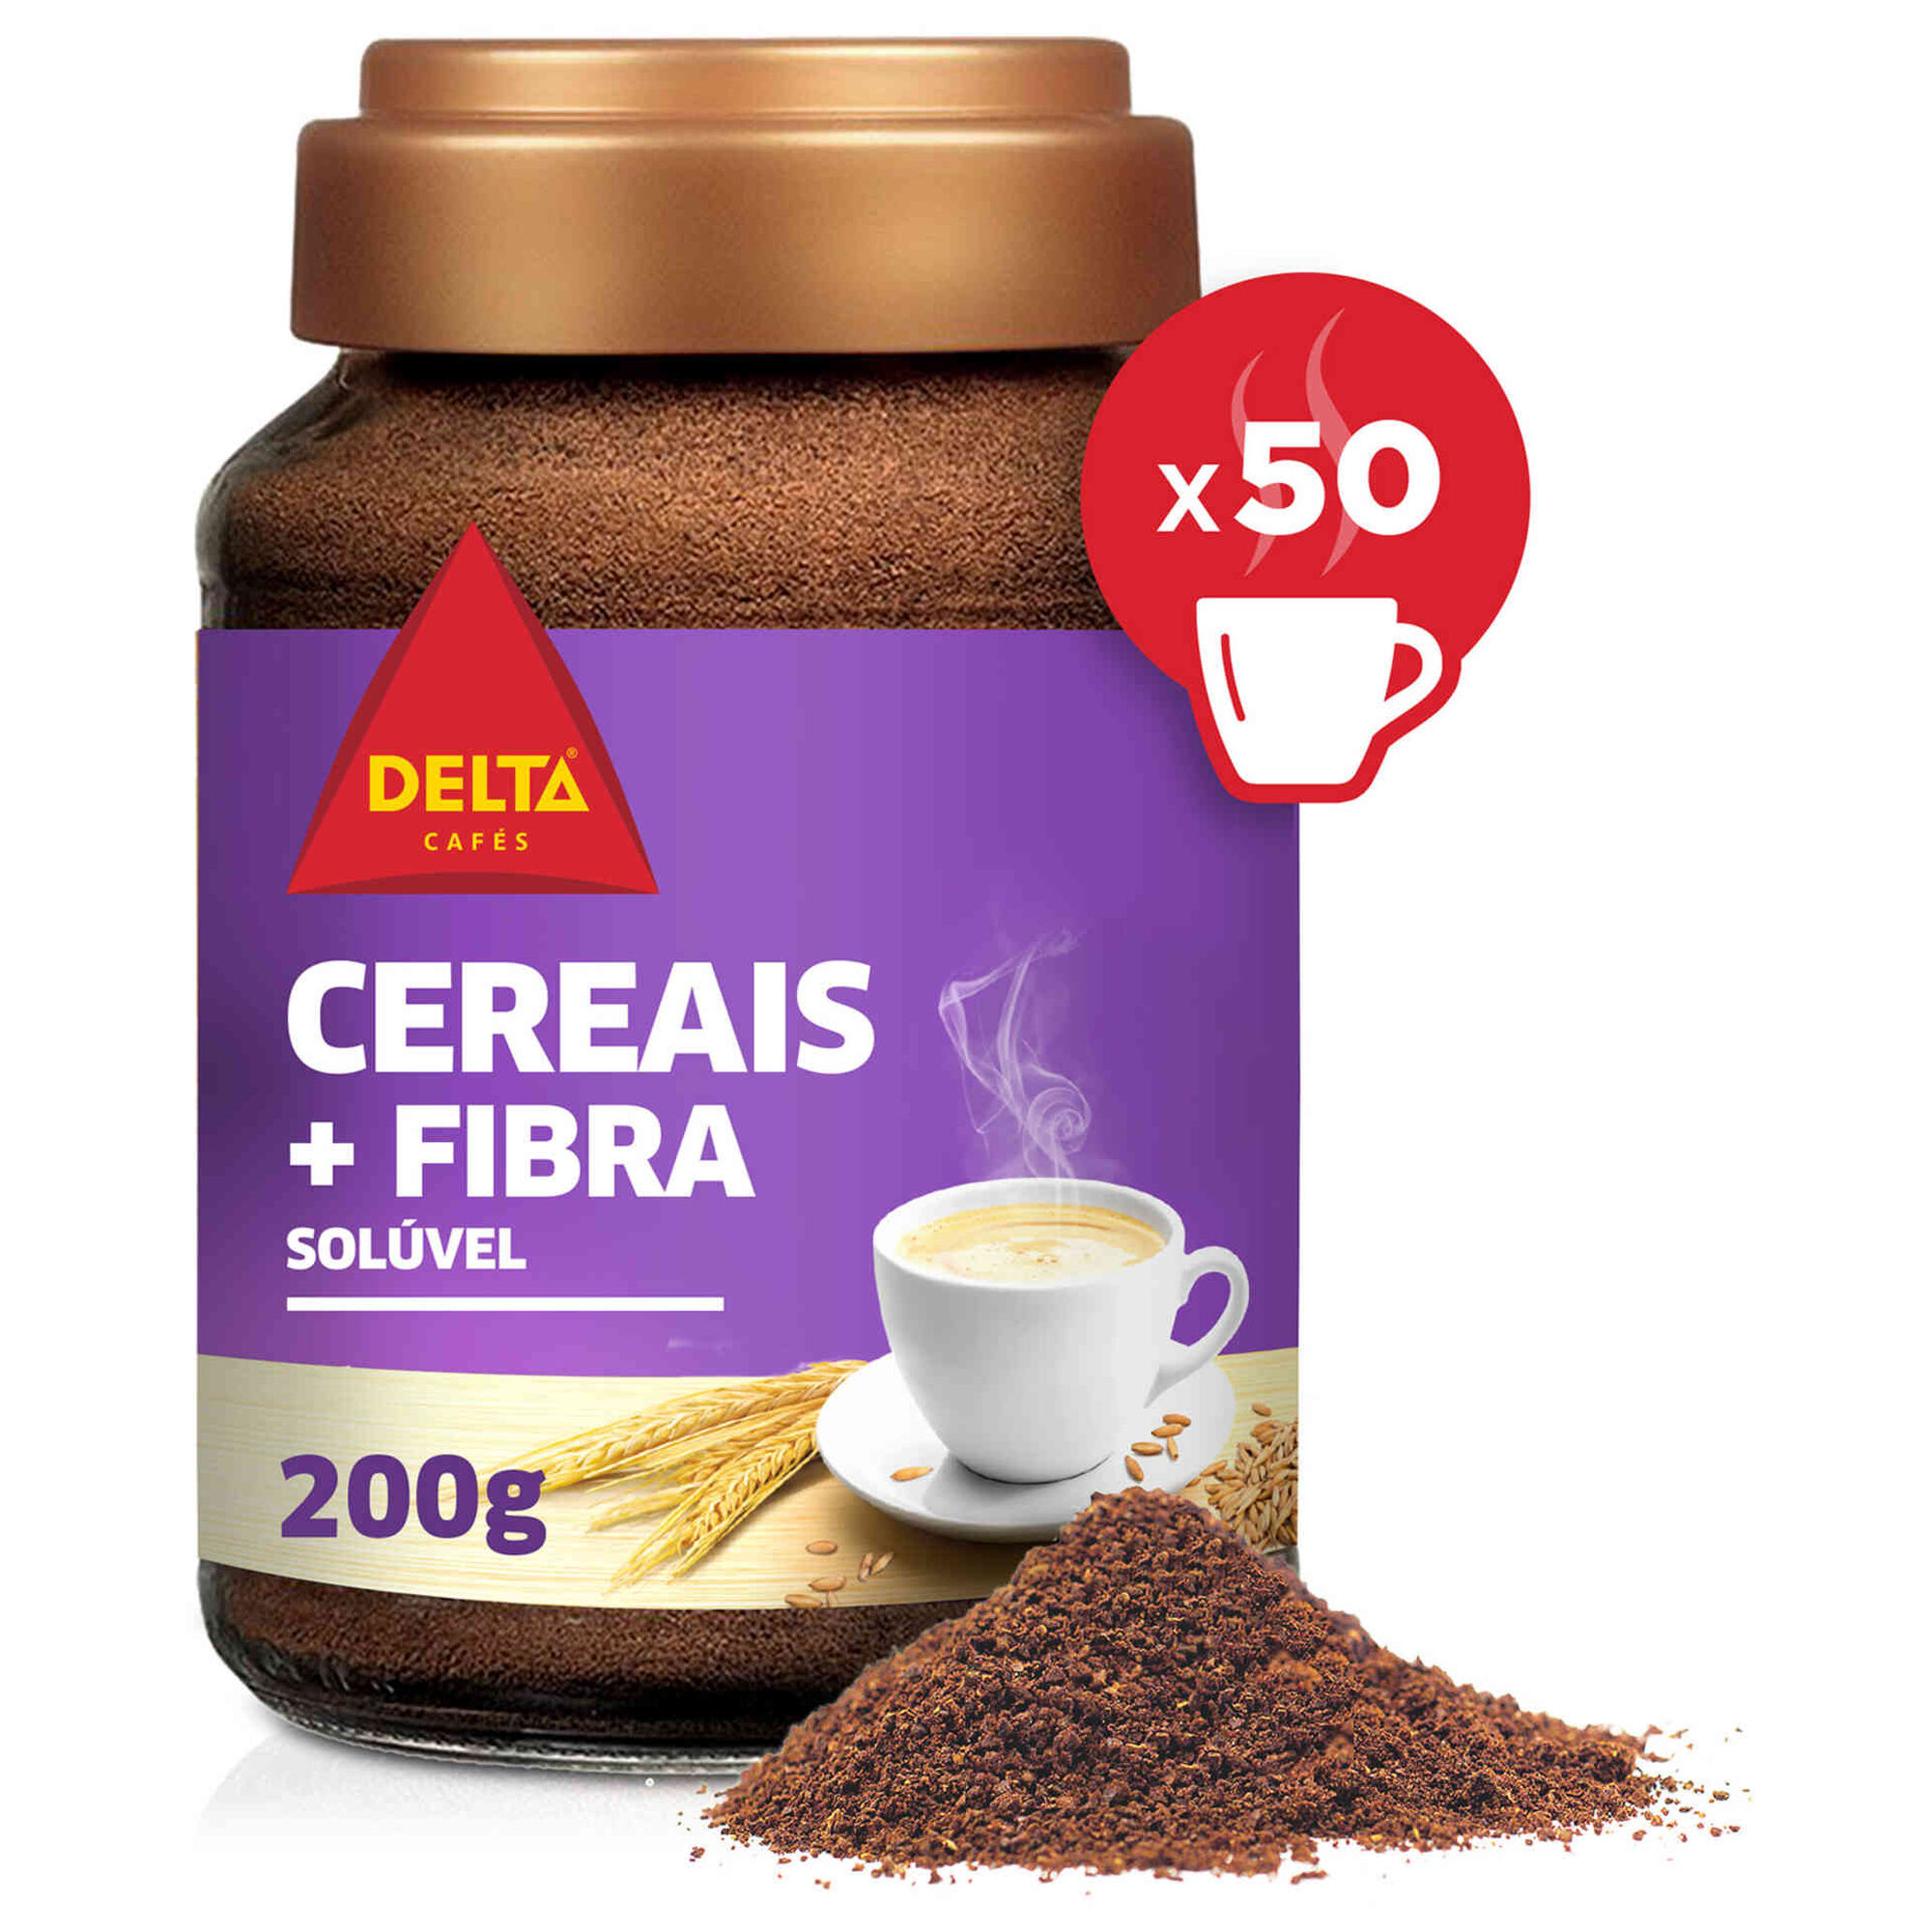 Delta cereais + fibra soluvel – mélange soluble d’orge, chicorée et seigle sans café – 200g